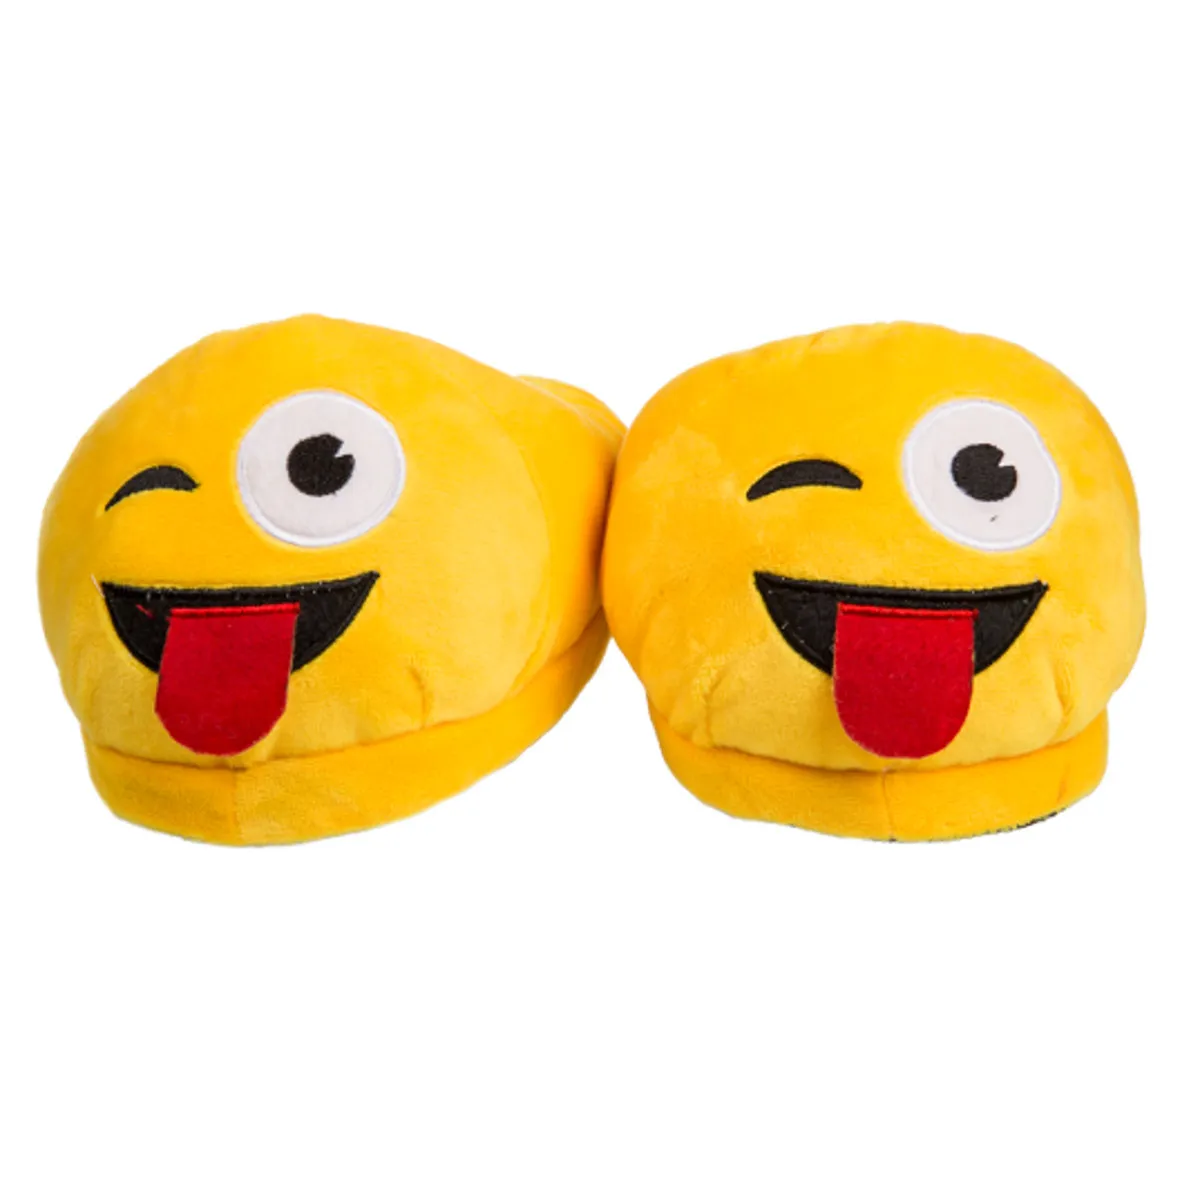 Kuschel-Hausschuhe Emoji – ausgestreckte Zunge 39-40